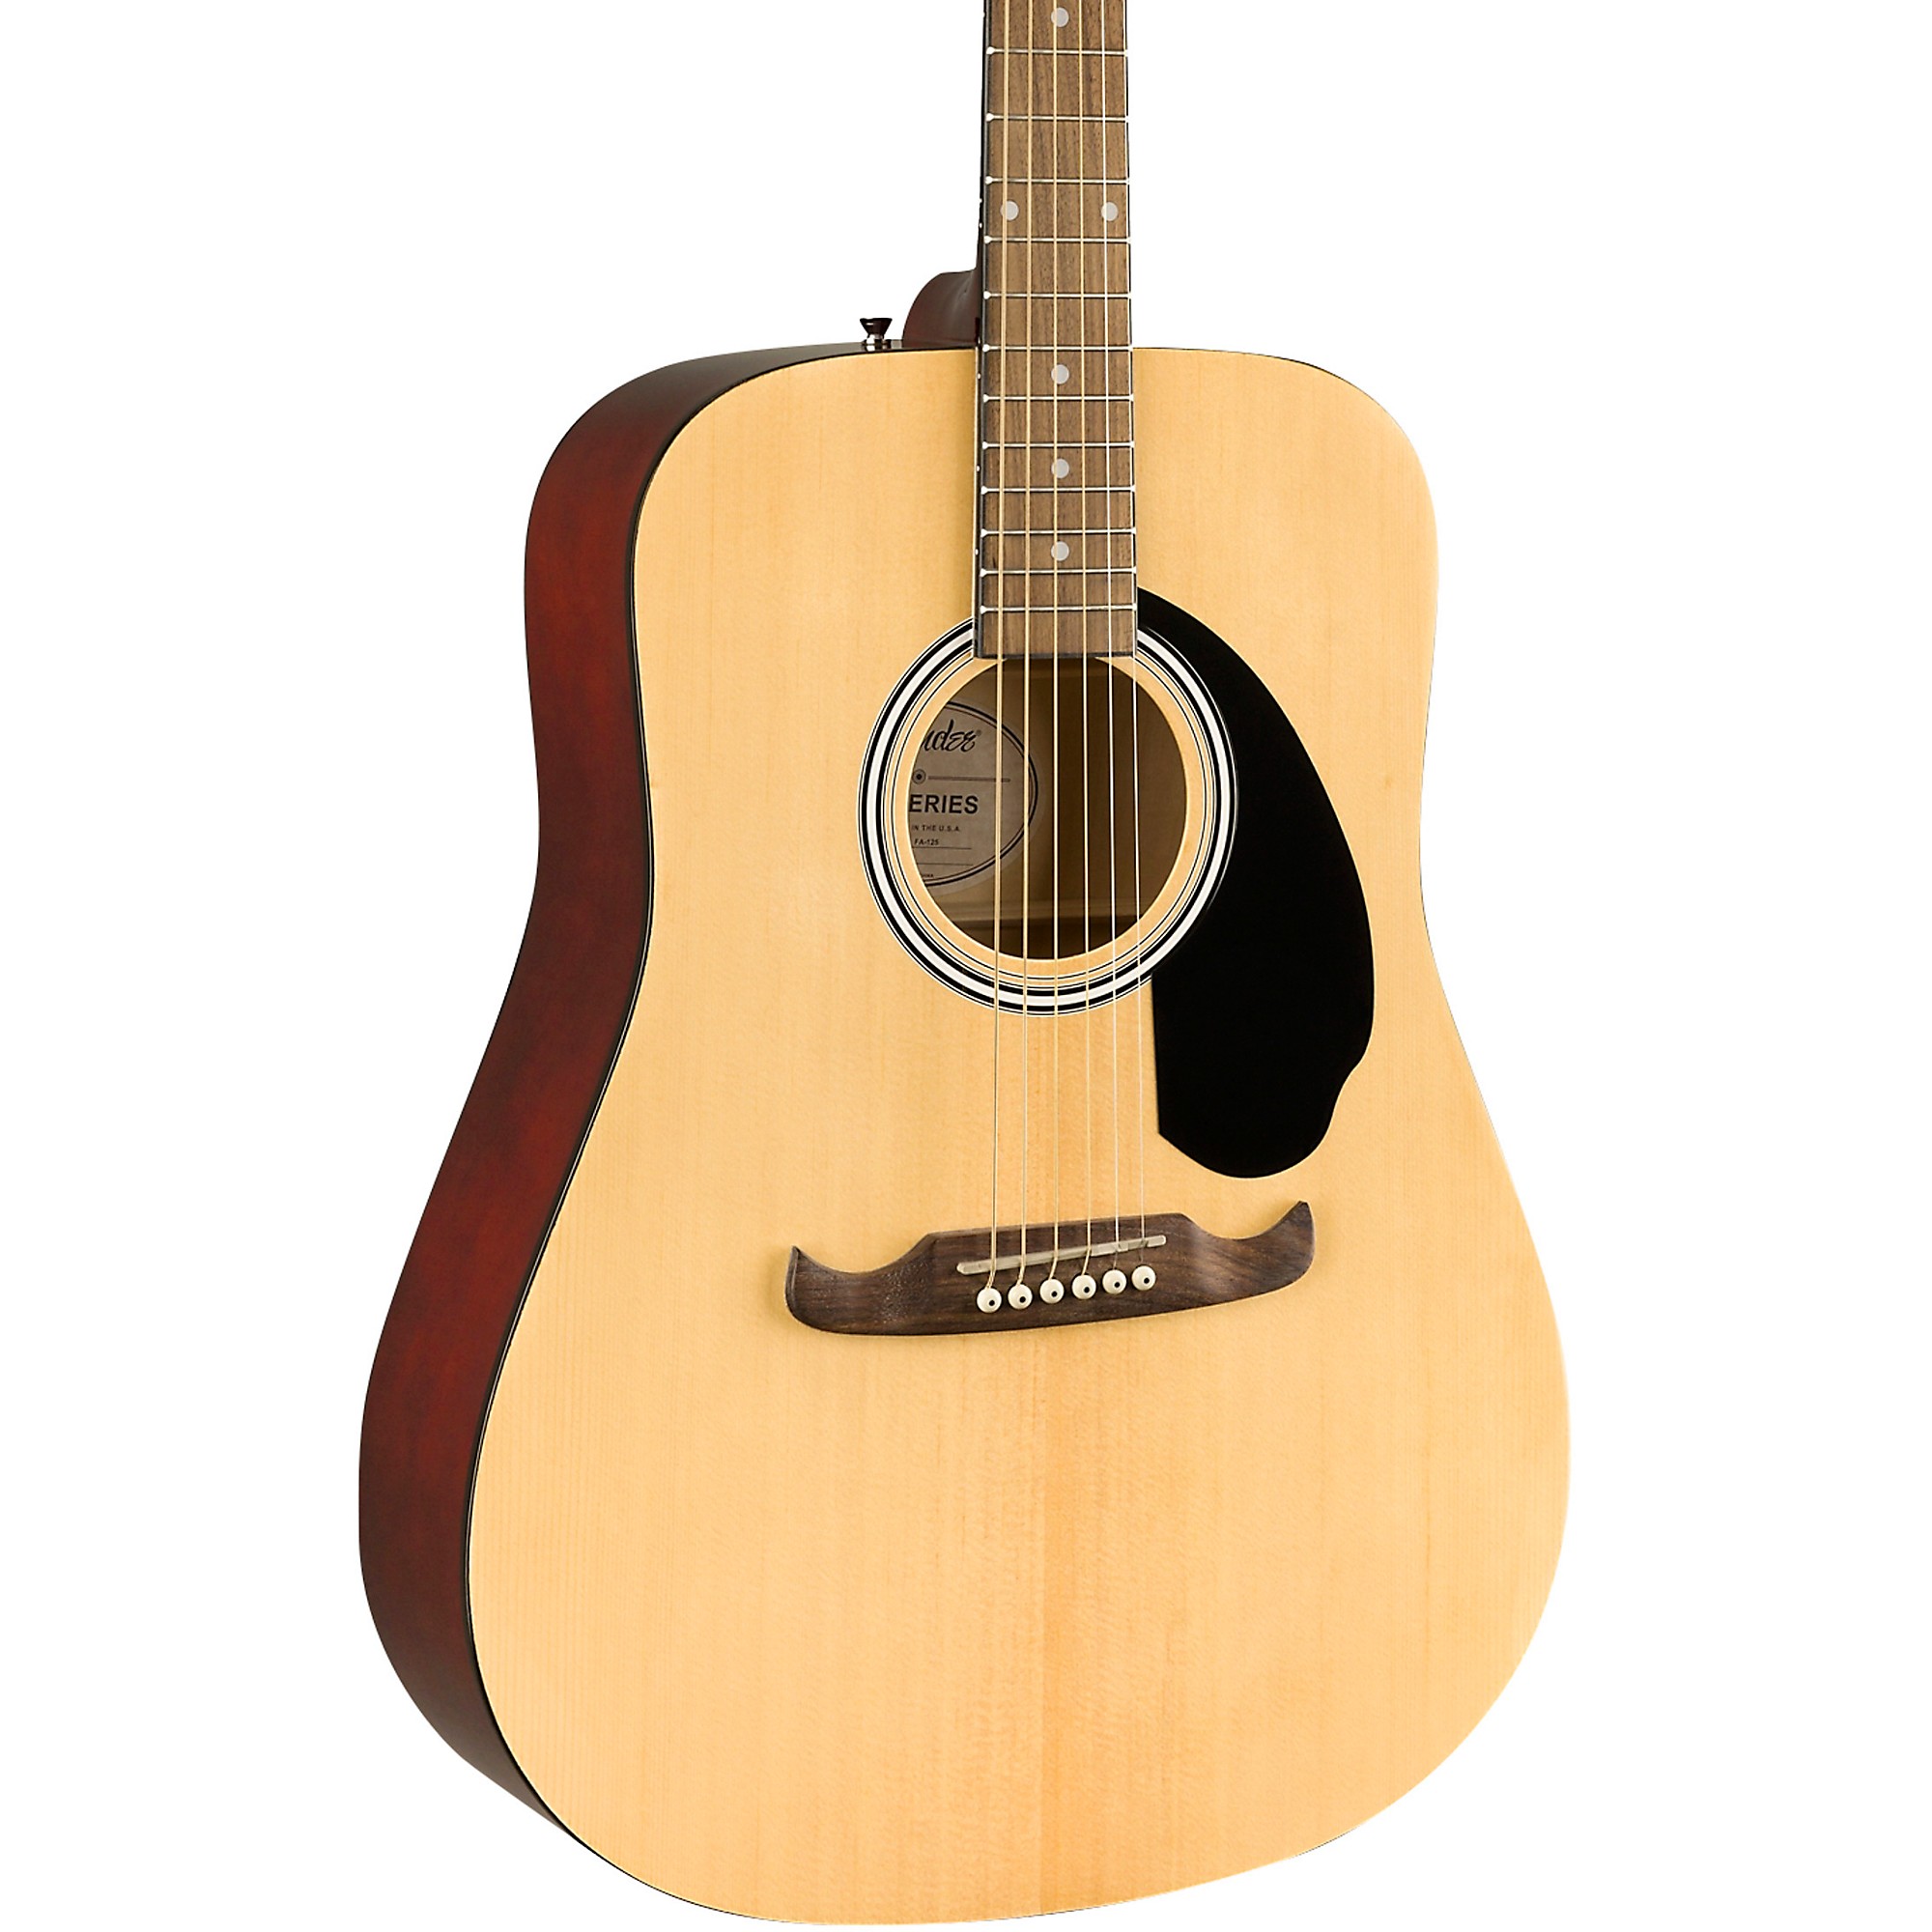 Subvención dirigir Irradiar Fender FA-125 Dreadnought Acoustic Guitar Natural | Guitar Center